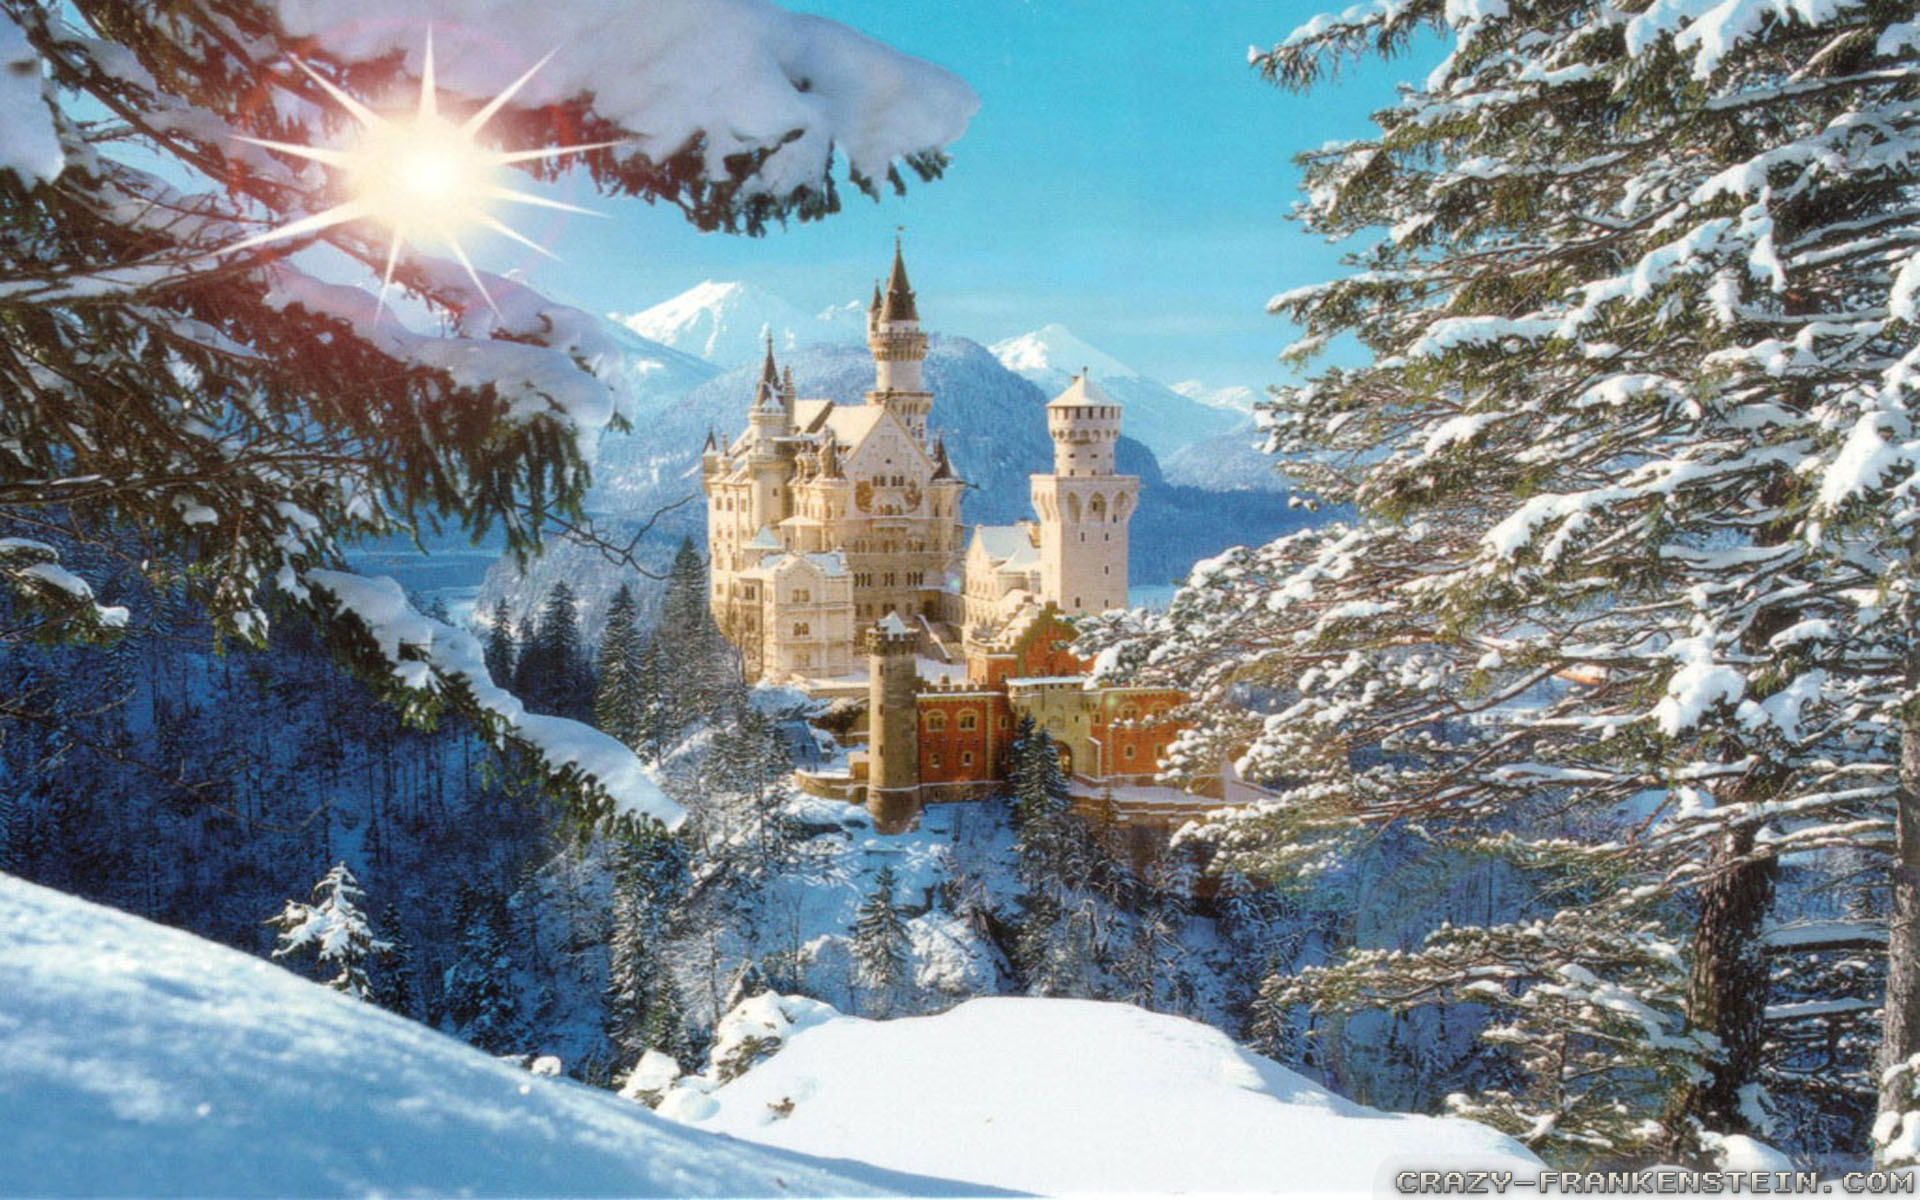 1920x1200 Wallpaper: Neuschwanstein castle winter wallpapers. Resolution: 1024x768 |  1280x1024 | 1600x1200. Widescreen Res: 1440x900 | 1680x1050 | 